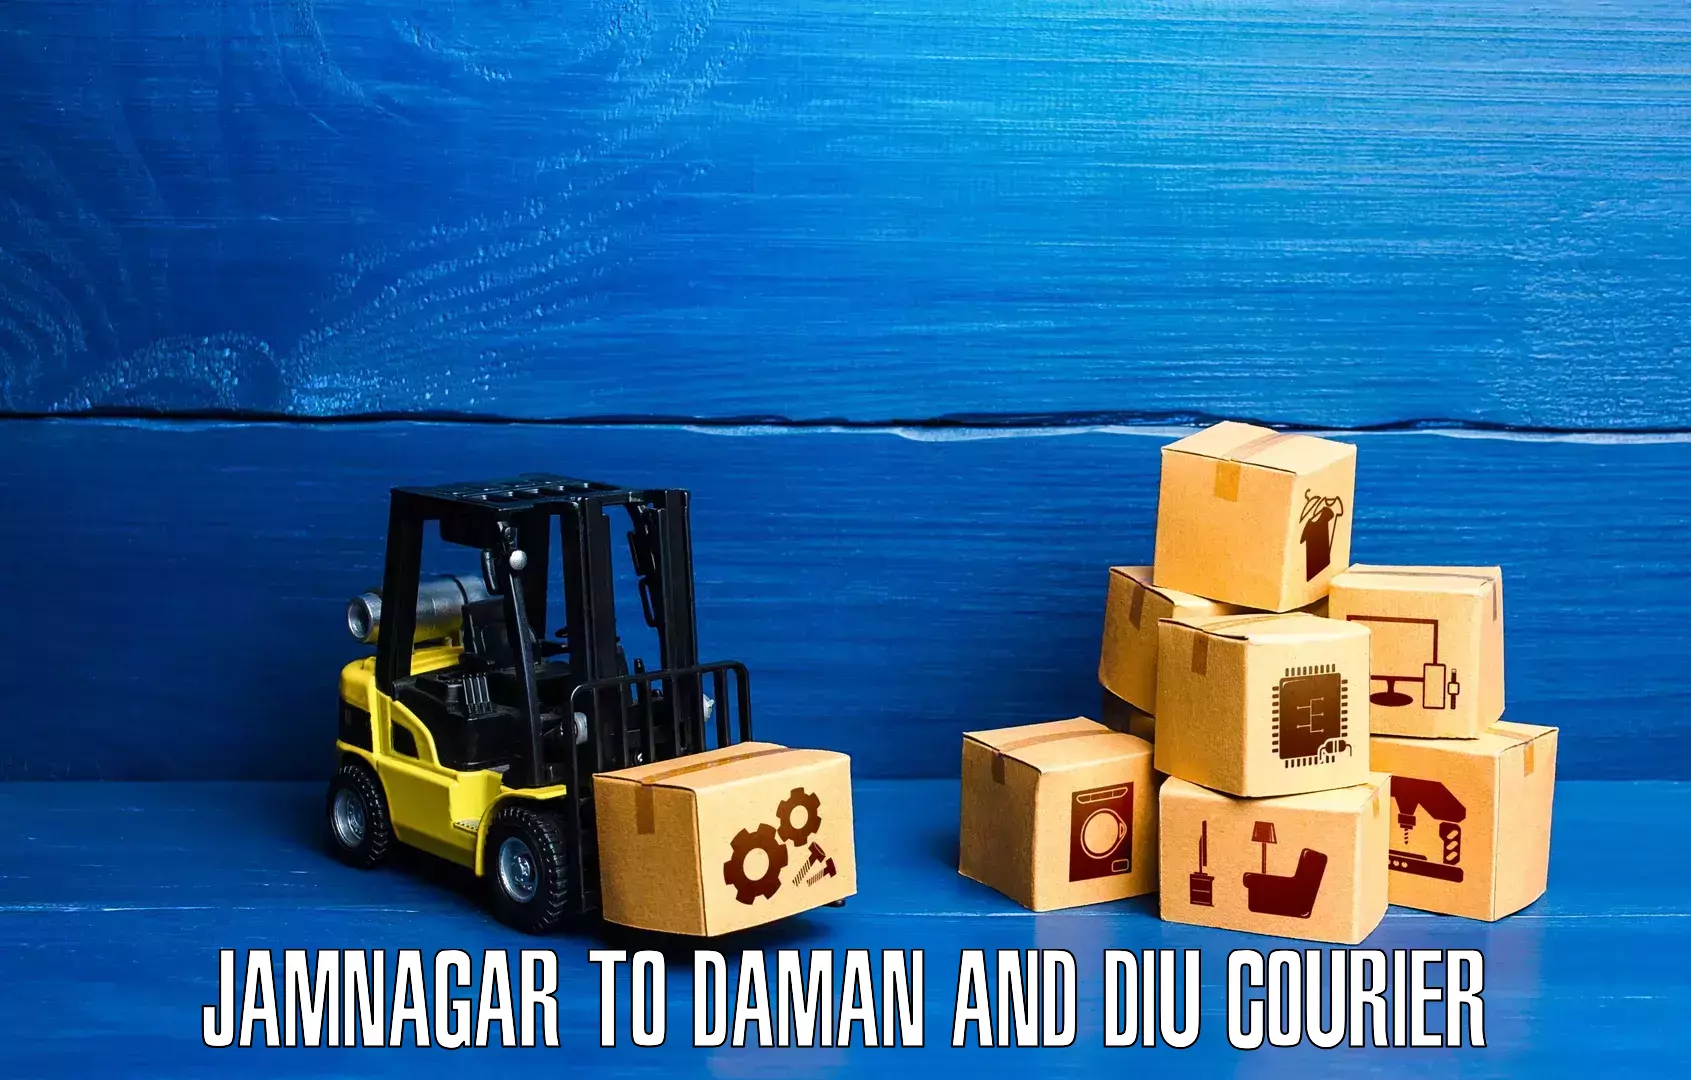 Urban courier service Jamnagar to Daman